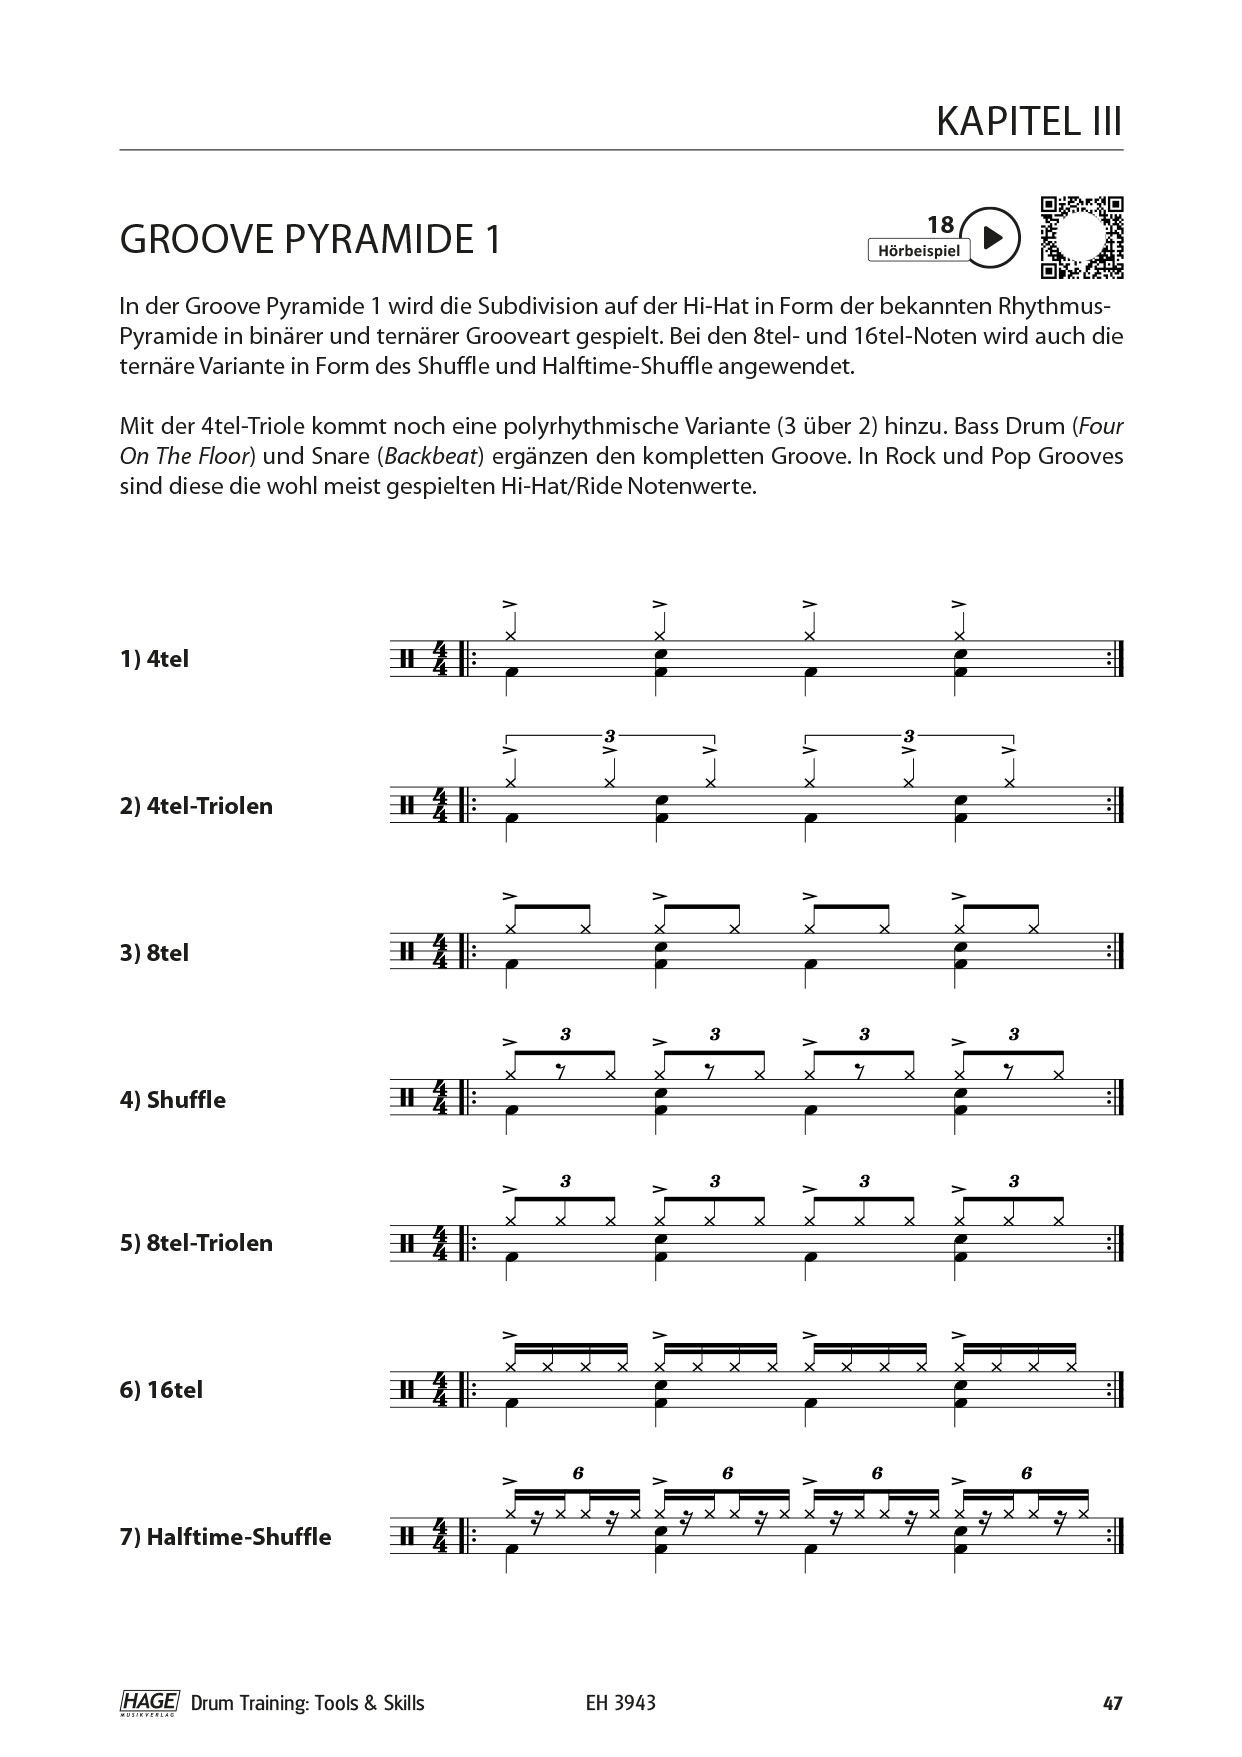 Drum Training Tools & Skills (mit QR-Codes) Seiten 9